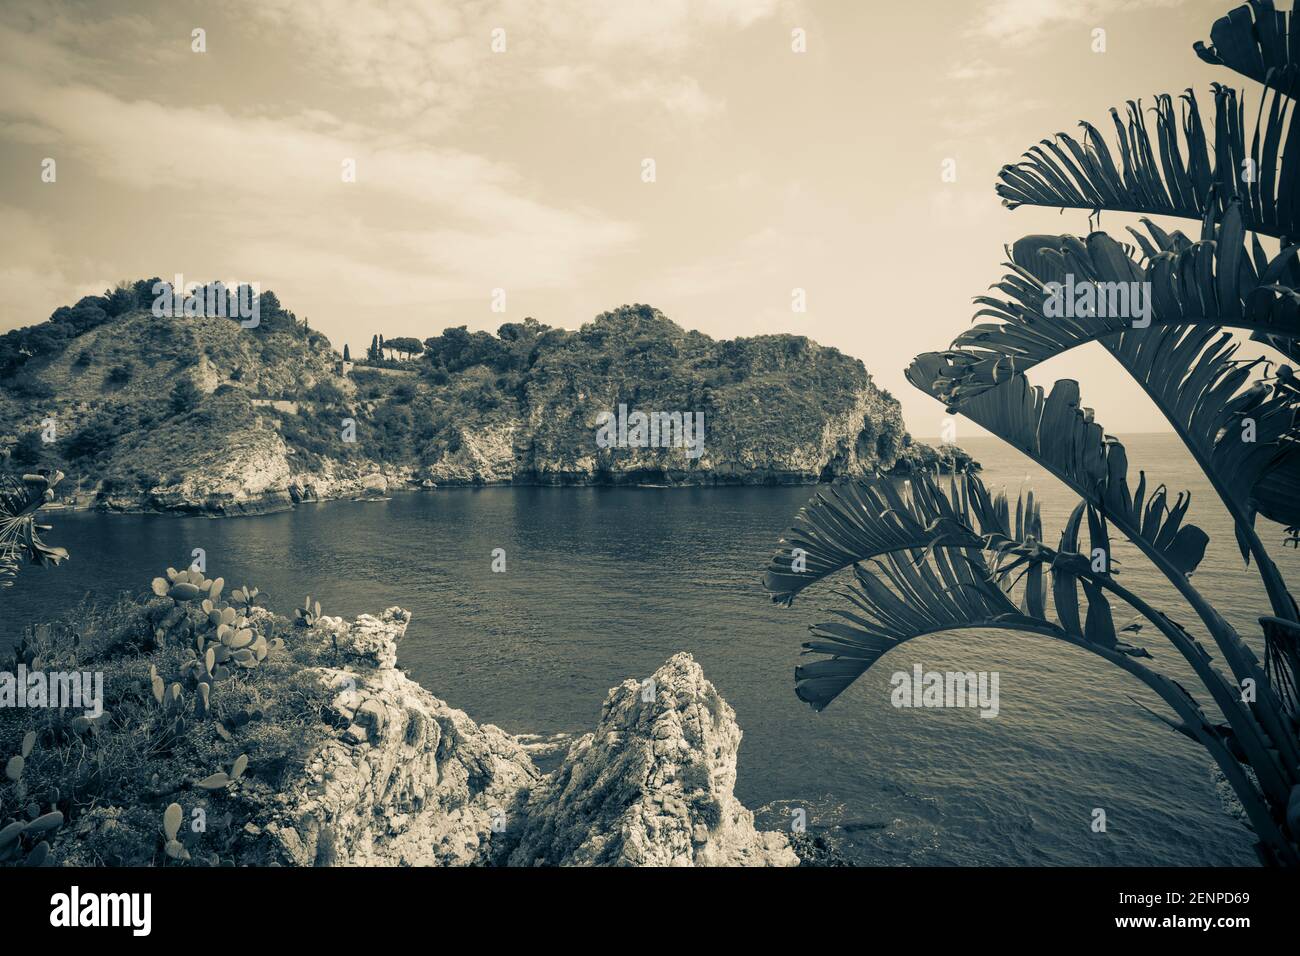 Italie, Sicile, Taormina, Isola Bella, une plage et un sanctuaire marin Banque D'Images